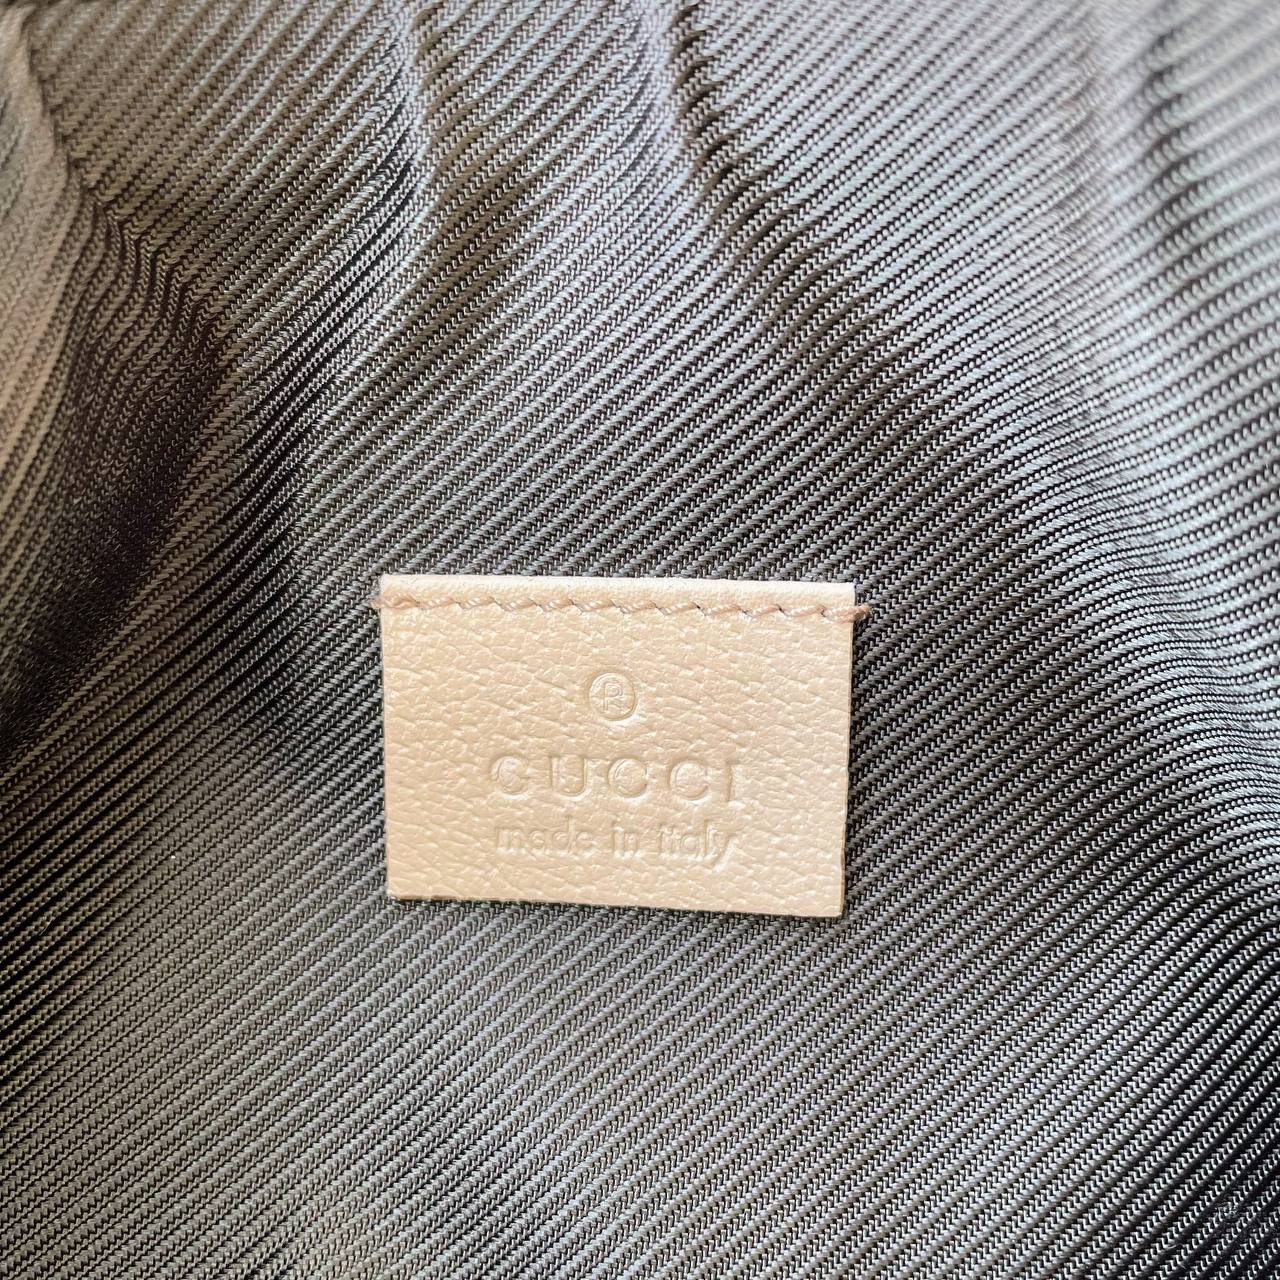 【 In-Stock 】Old Gucci Shoulder Bag